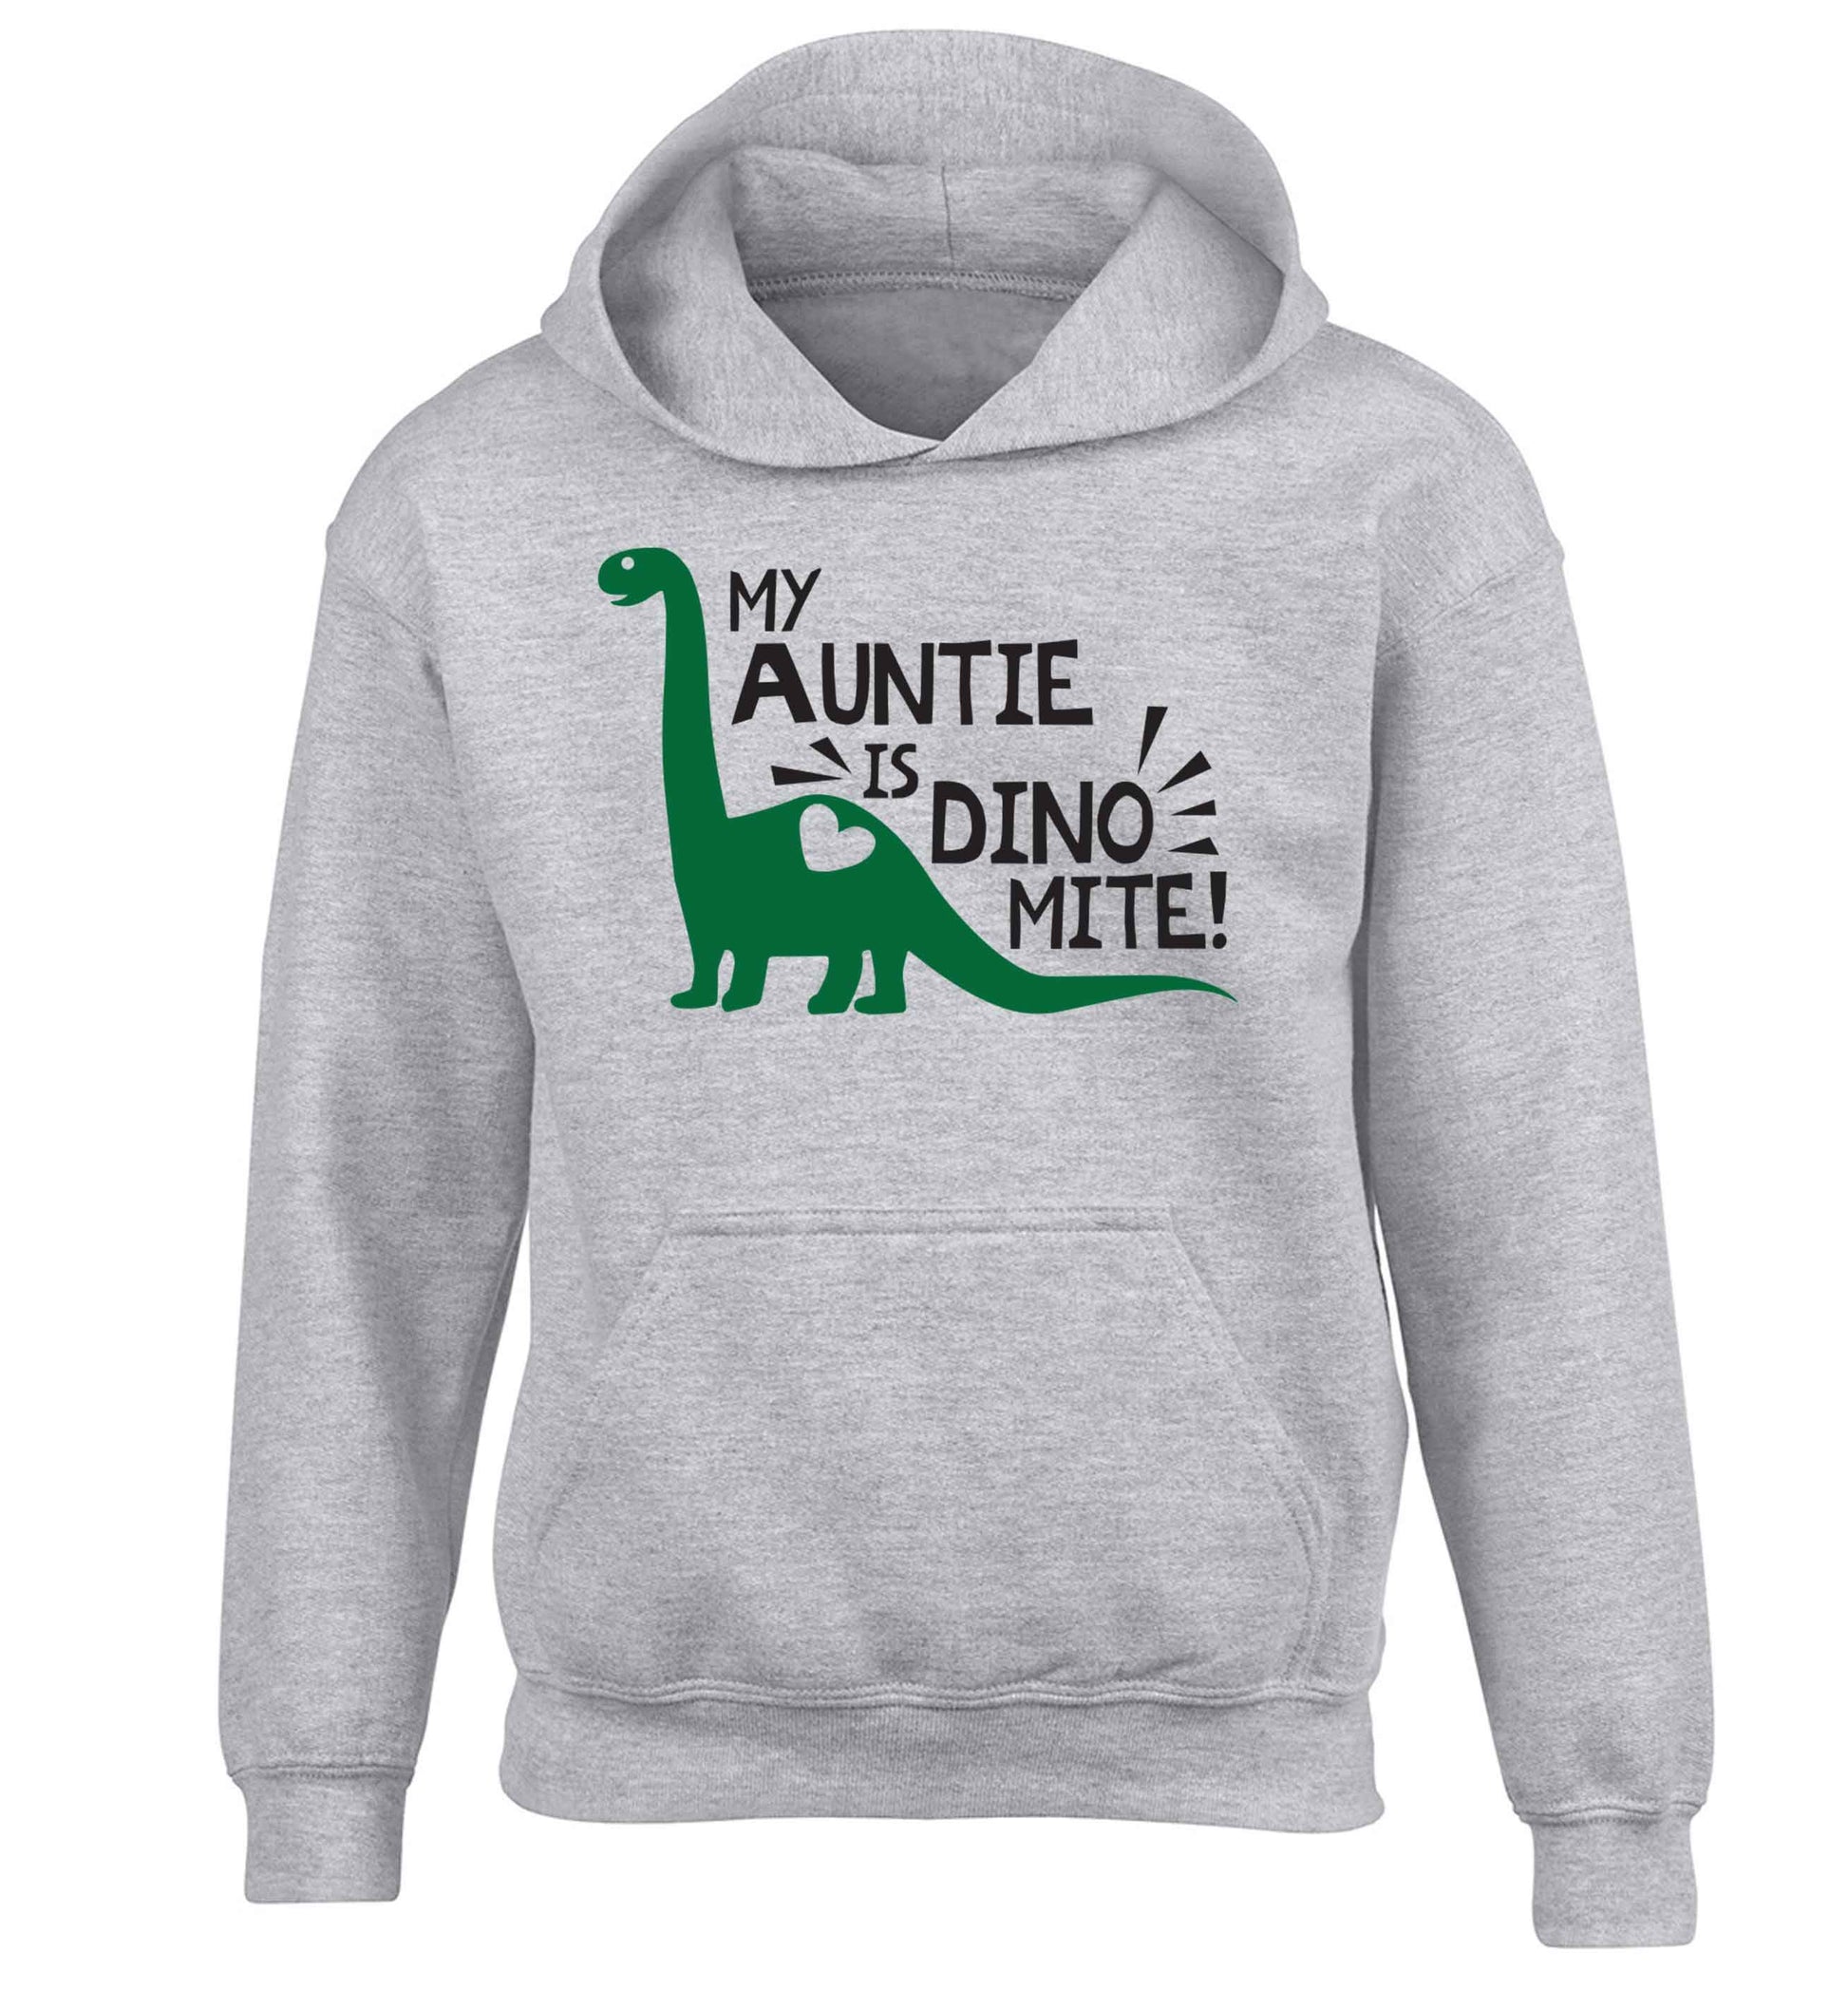 My auntie is dinomite! children's grey hoodie 12-13 Years